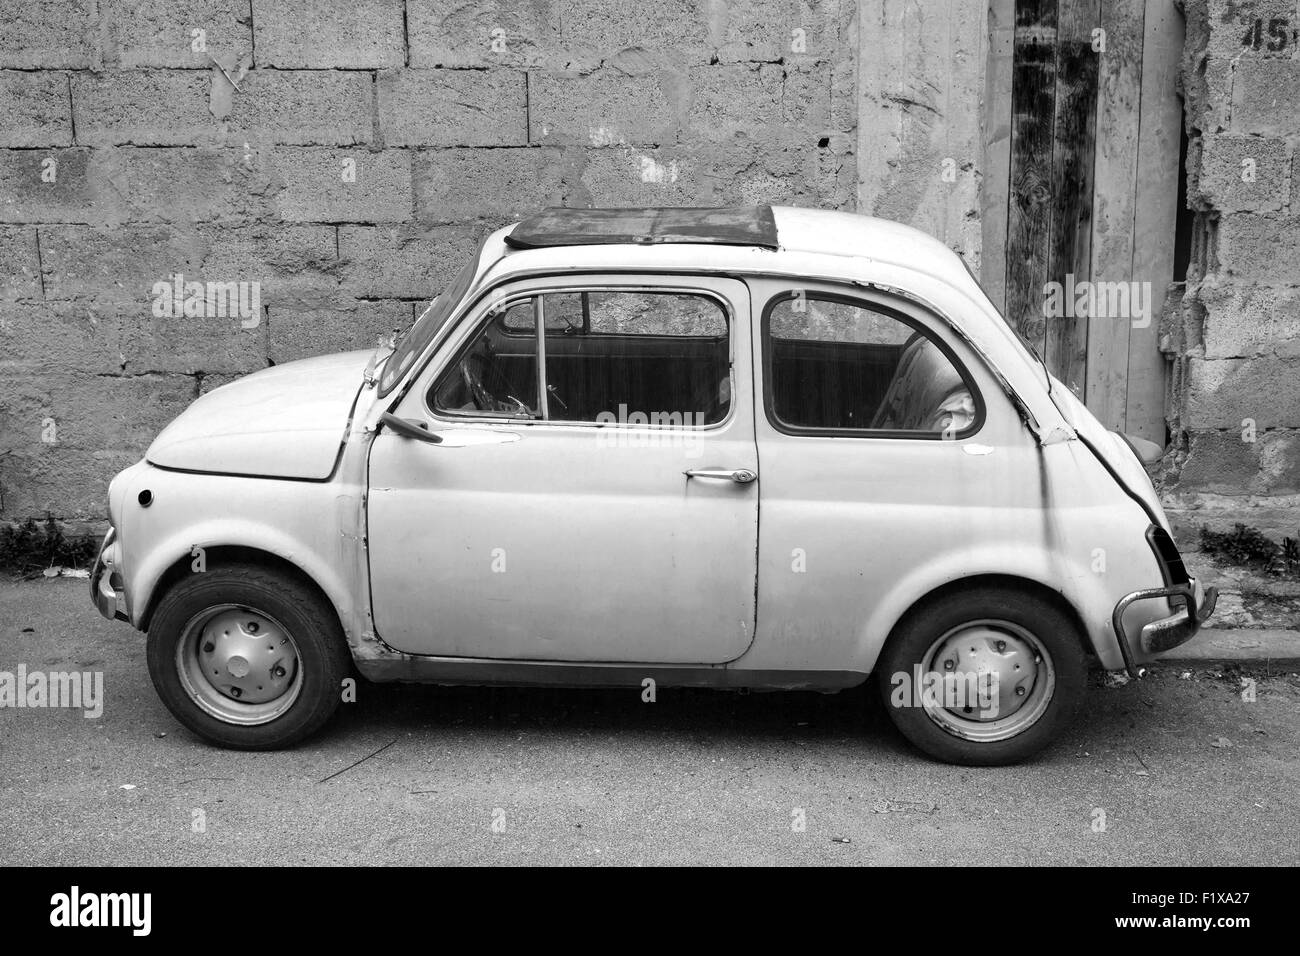 Lacco Ameno, Italien - 15. August 2015: Alte Fiat Nuova 500 Stadtauto produziert des italienischen Herstellers Fiat zwischen 1957 und 197 Stockfoto